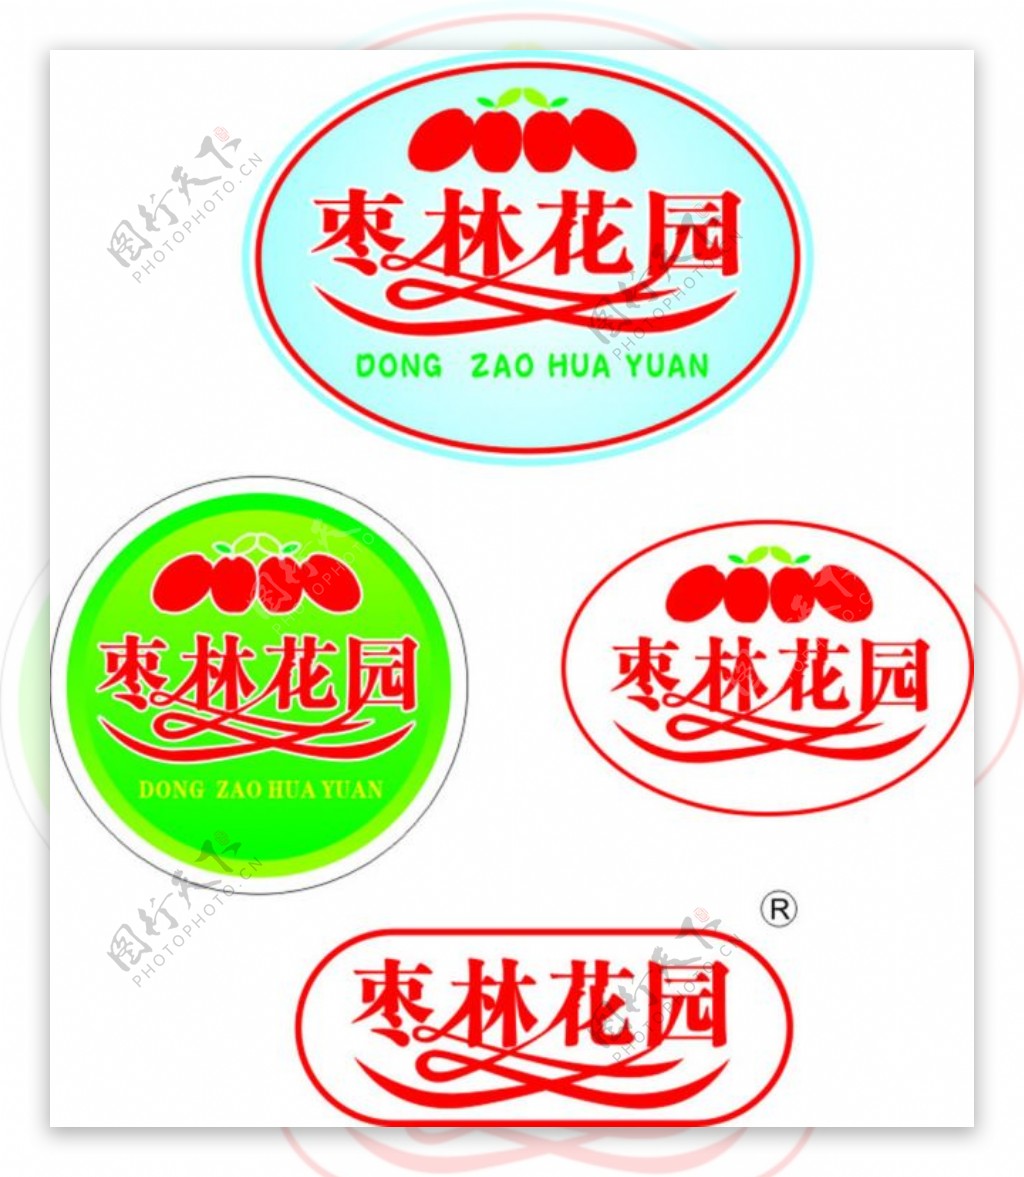 枣林花园标志商标设计